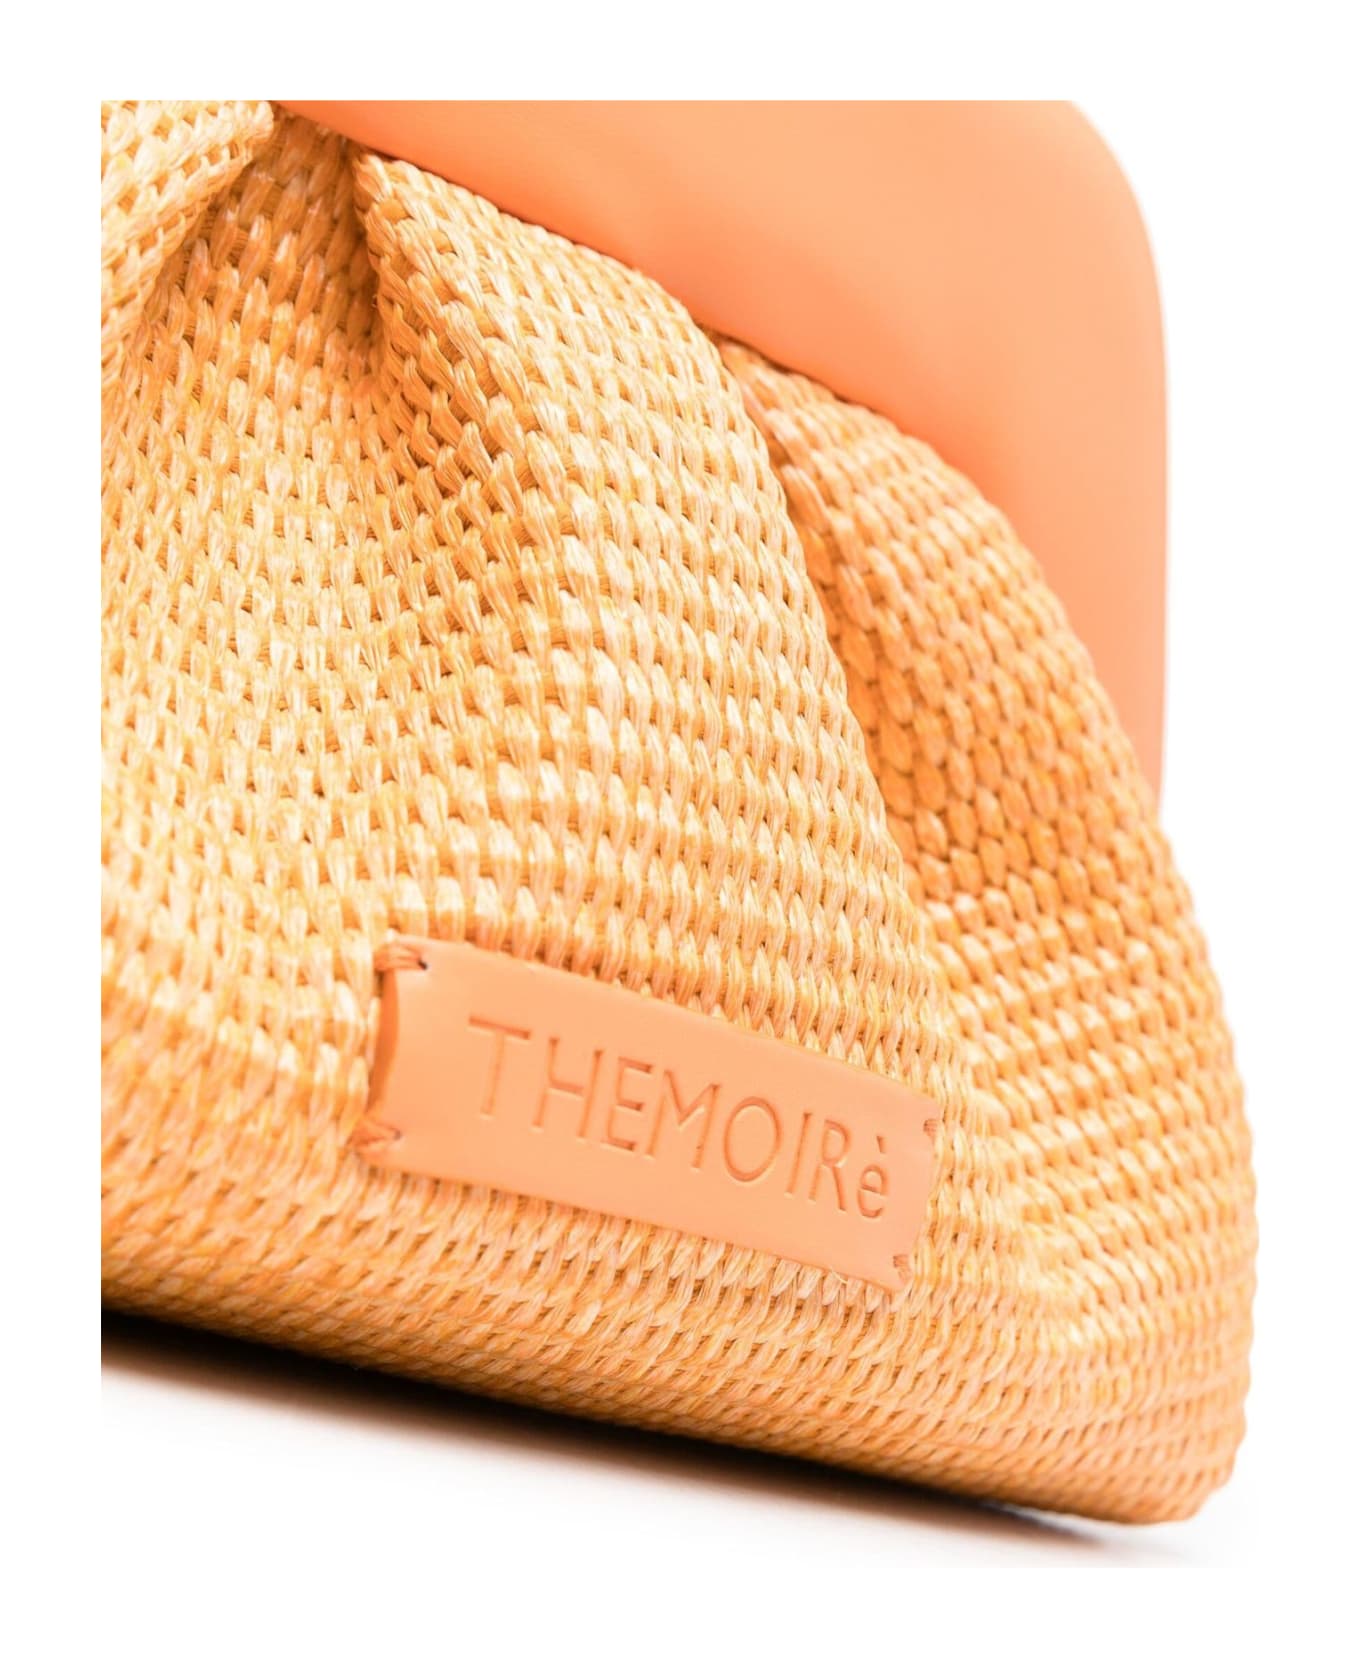 THEMOIRè Bios Straw Shoulder Bag - Orange